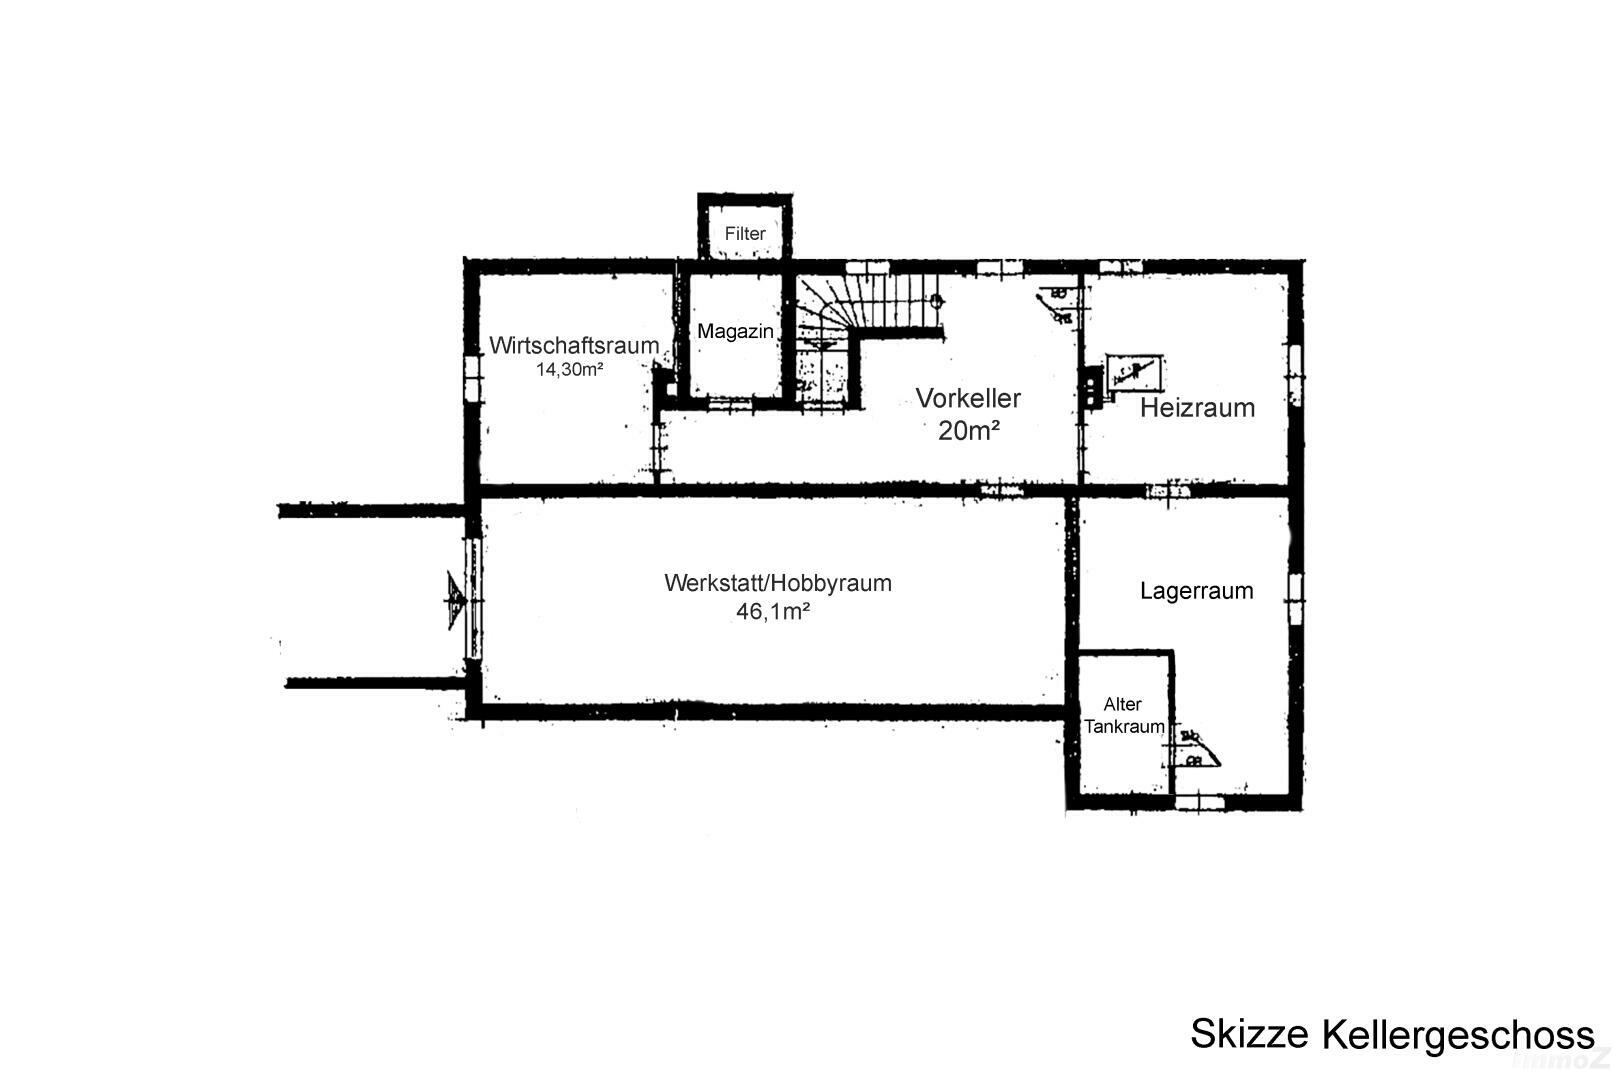 Haus zu kaufen: Spitzäckerweg 64, 8055 Graz - KG Skizze